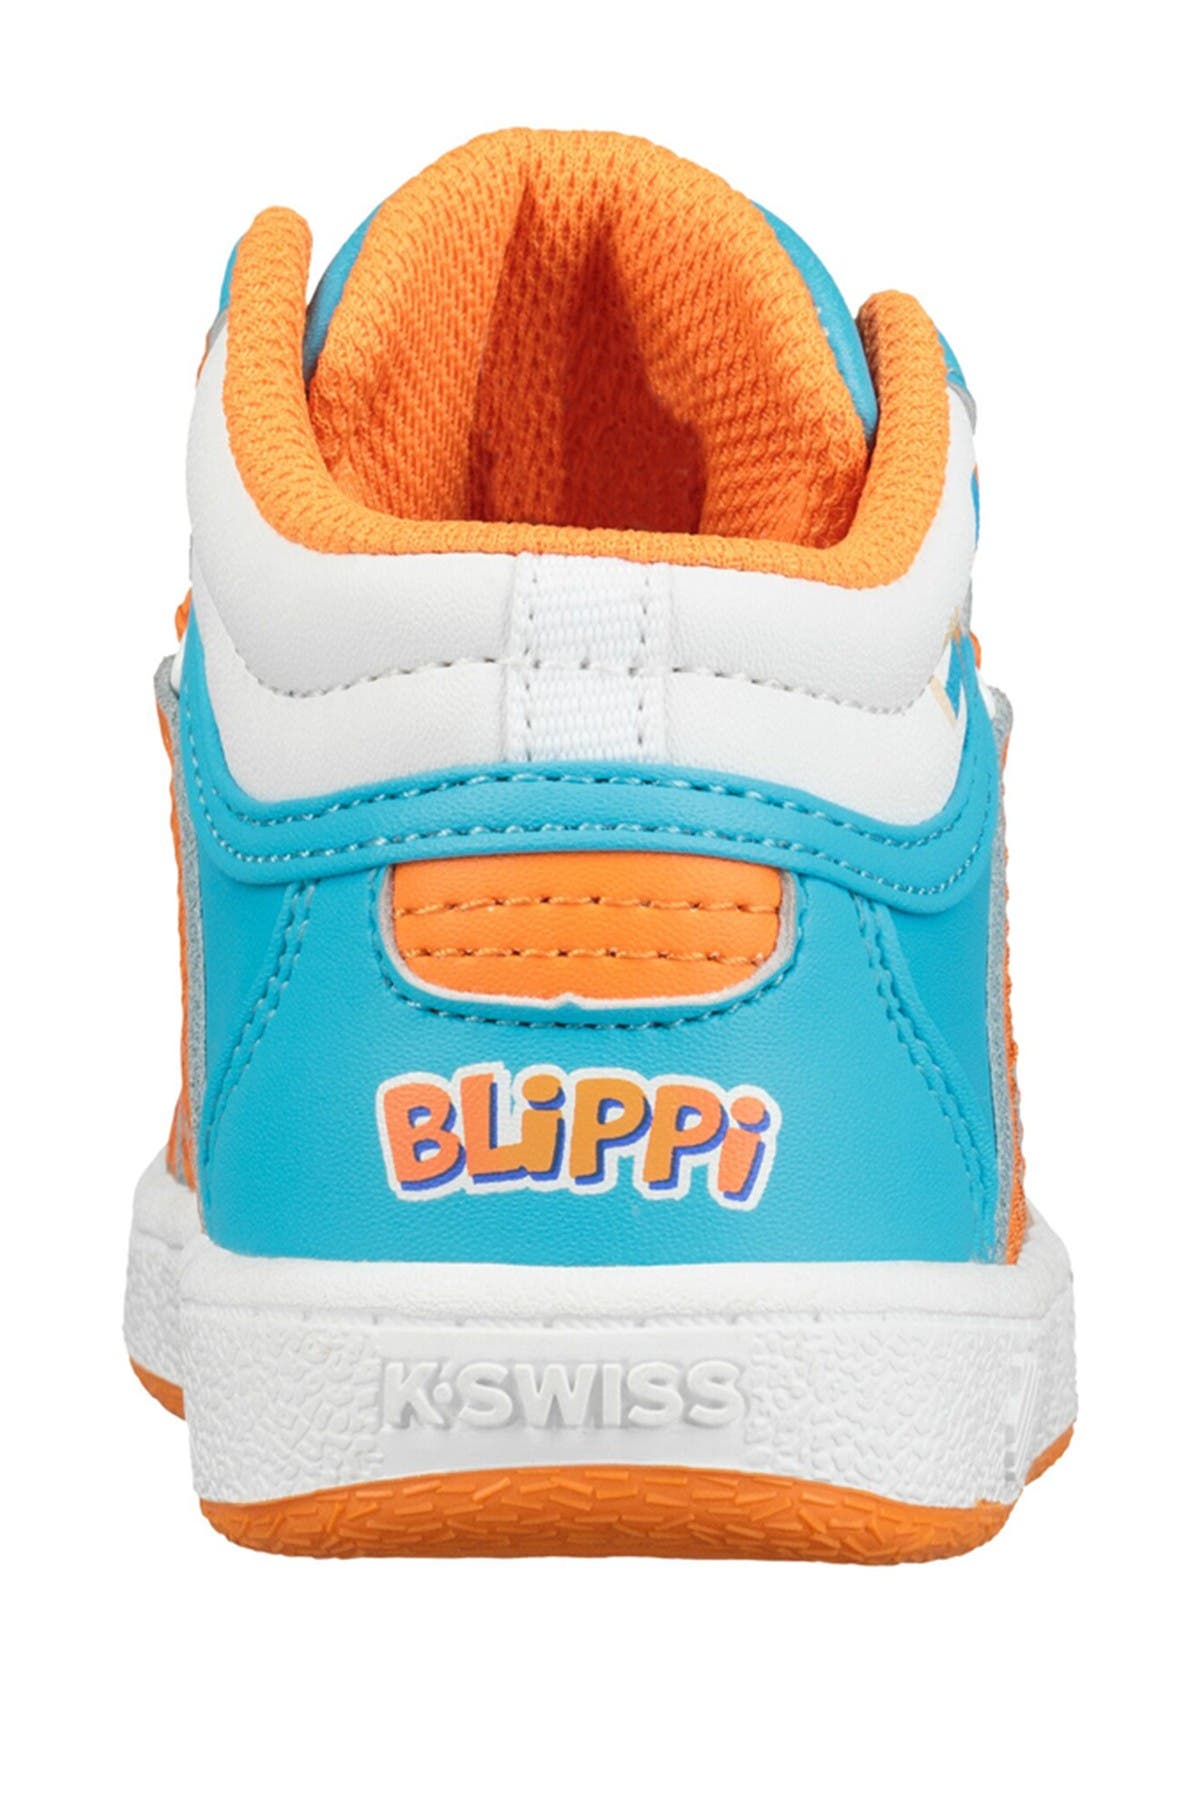 blippi k swiss shoes